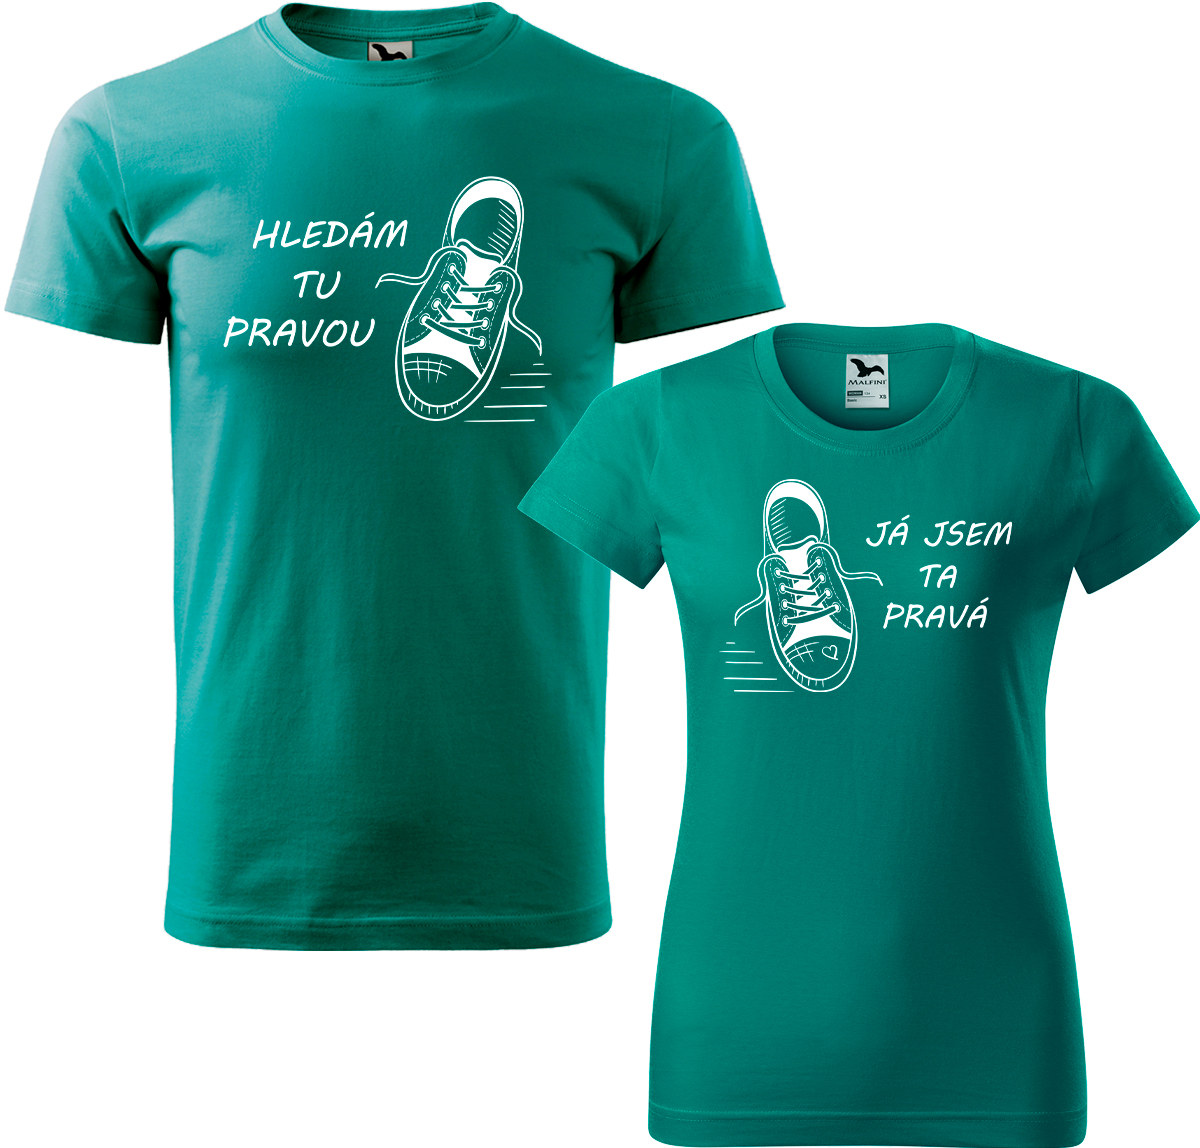 Trička pro páry - Kecky Barva: Emerald (19), Velikost dámské tričko: L, Velikost pánské tričko: L